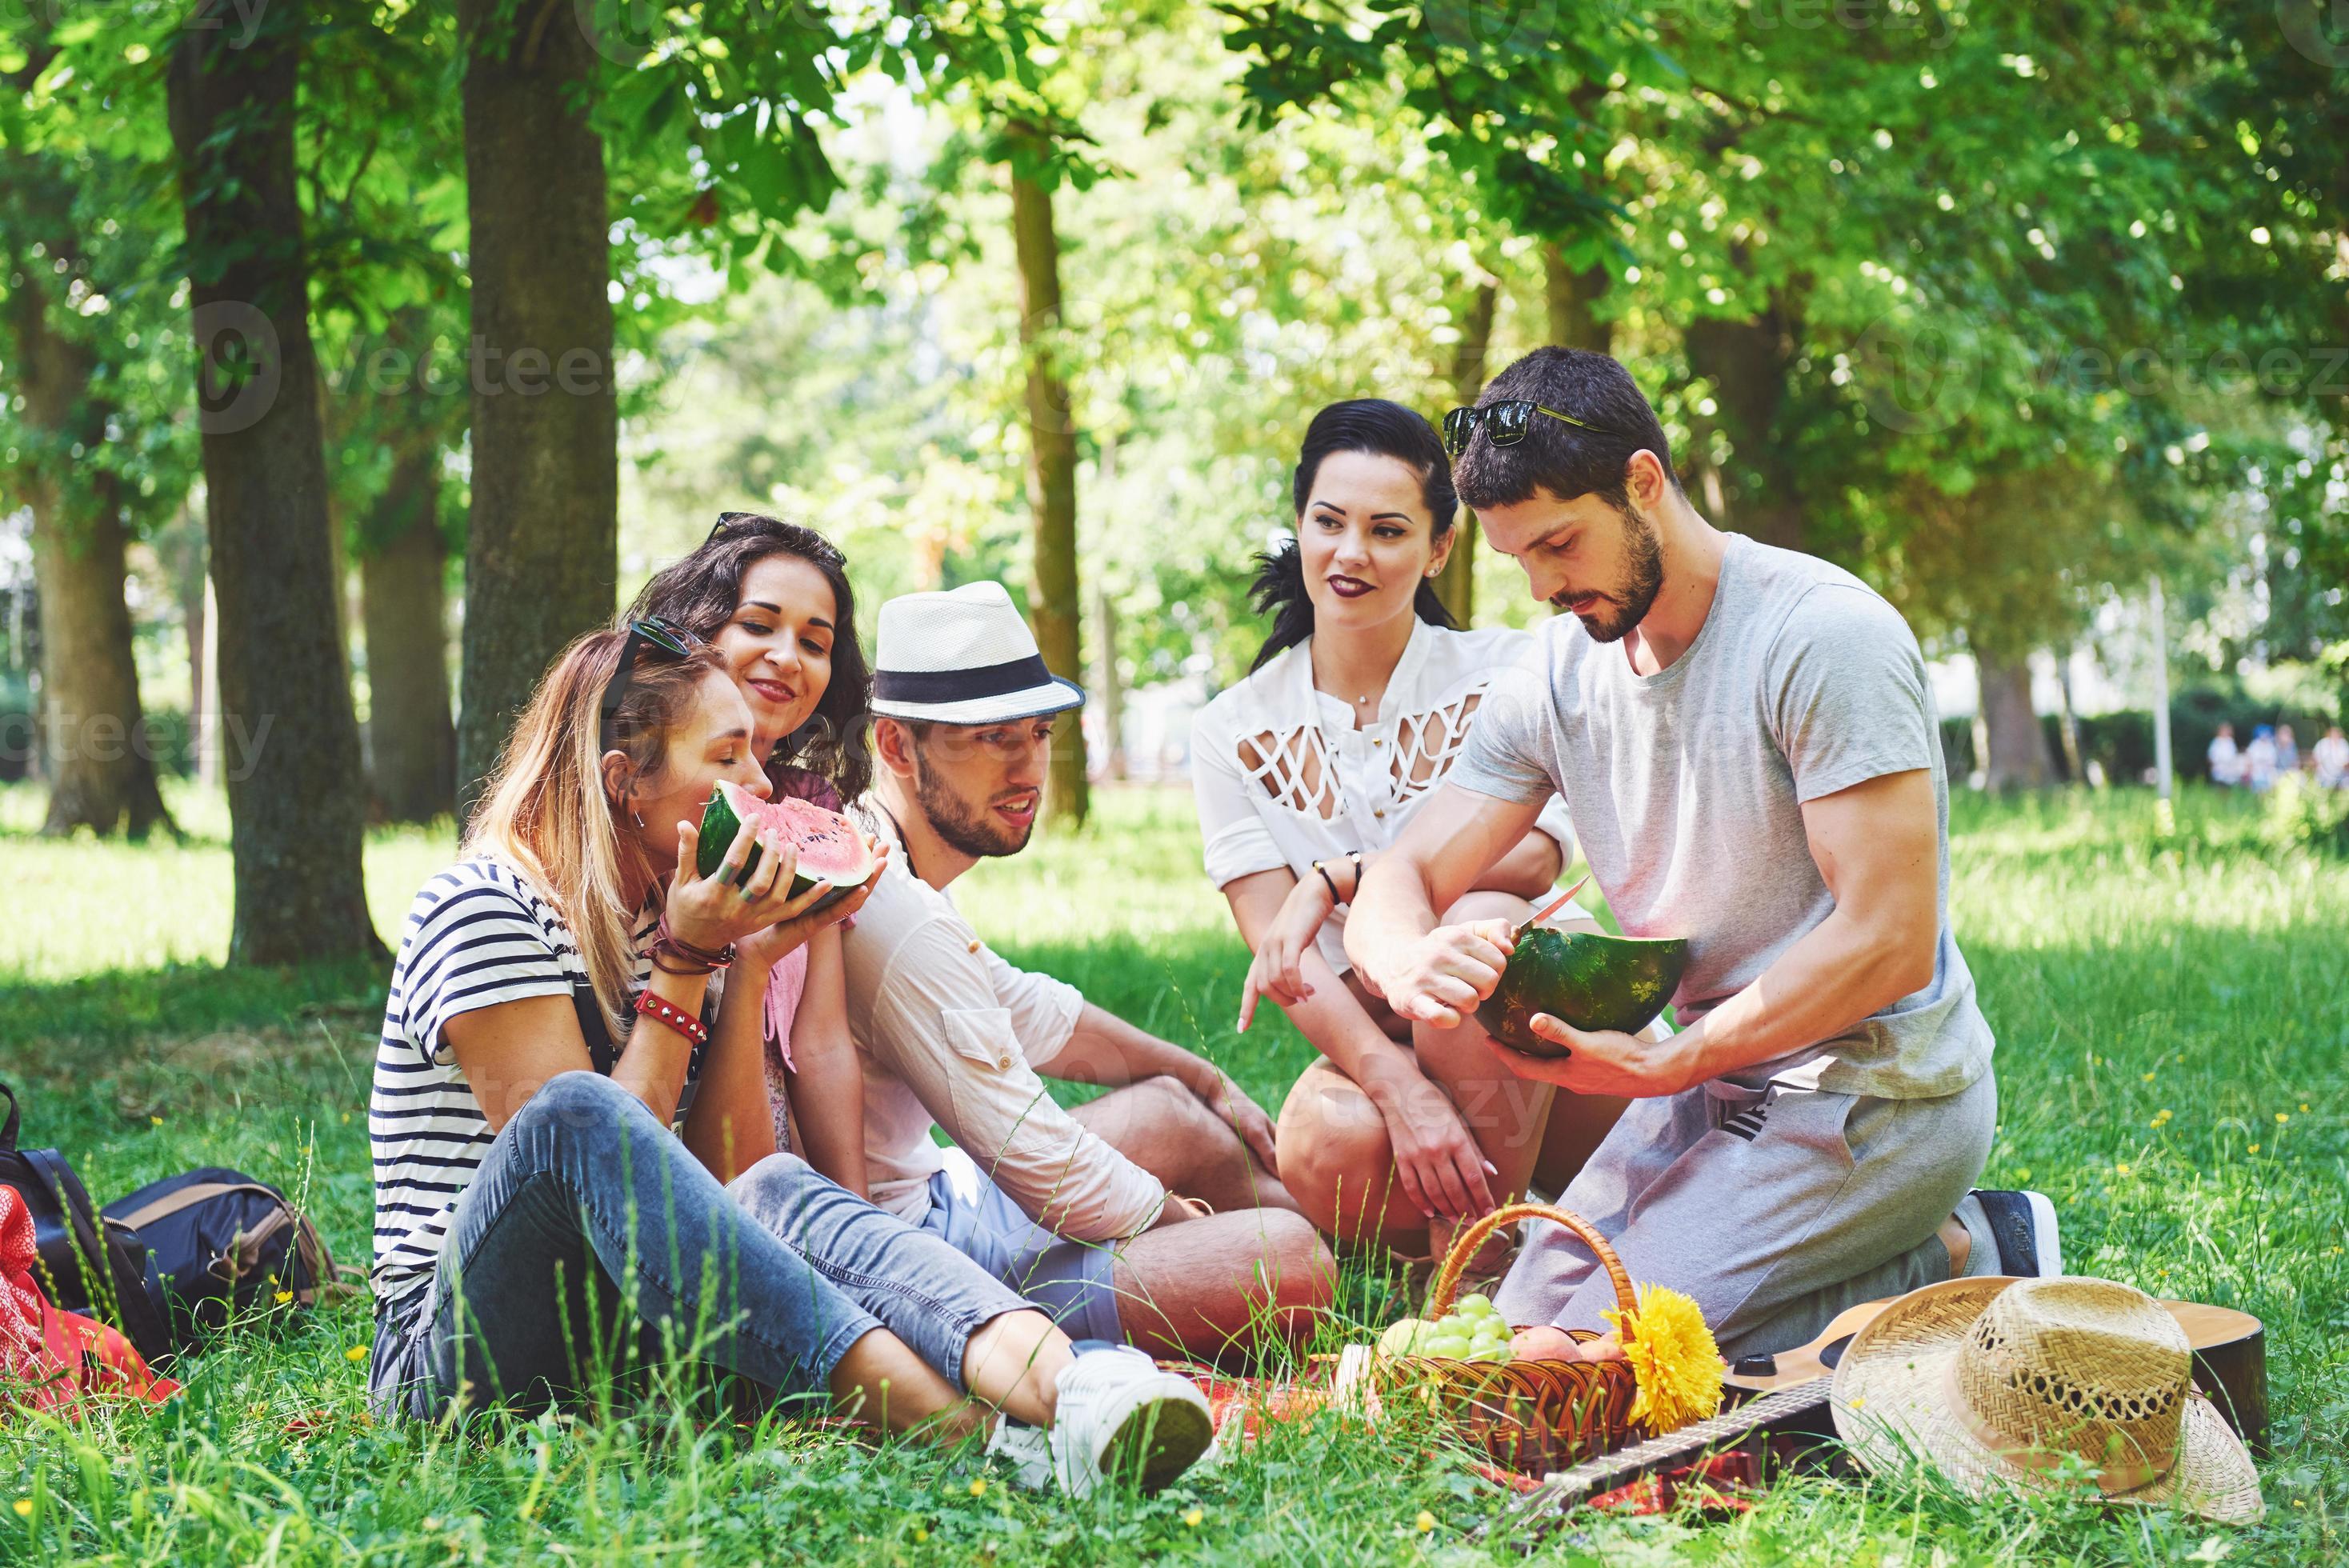 gruppo di amici che fanno picnic in un parco in una giornata di sole - persone che escono, si divertono mentre grigliano e si rilassano foto